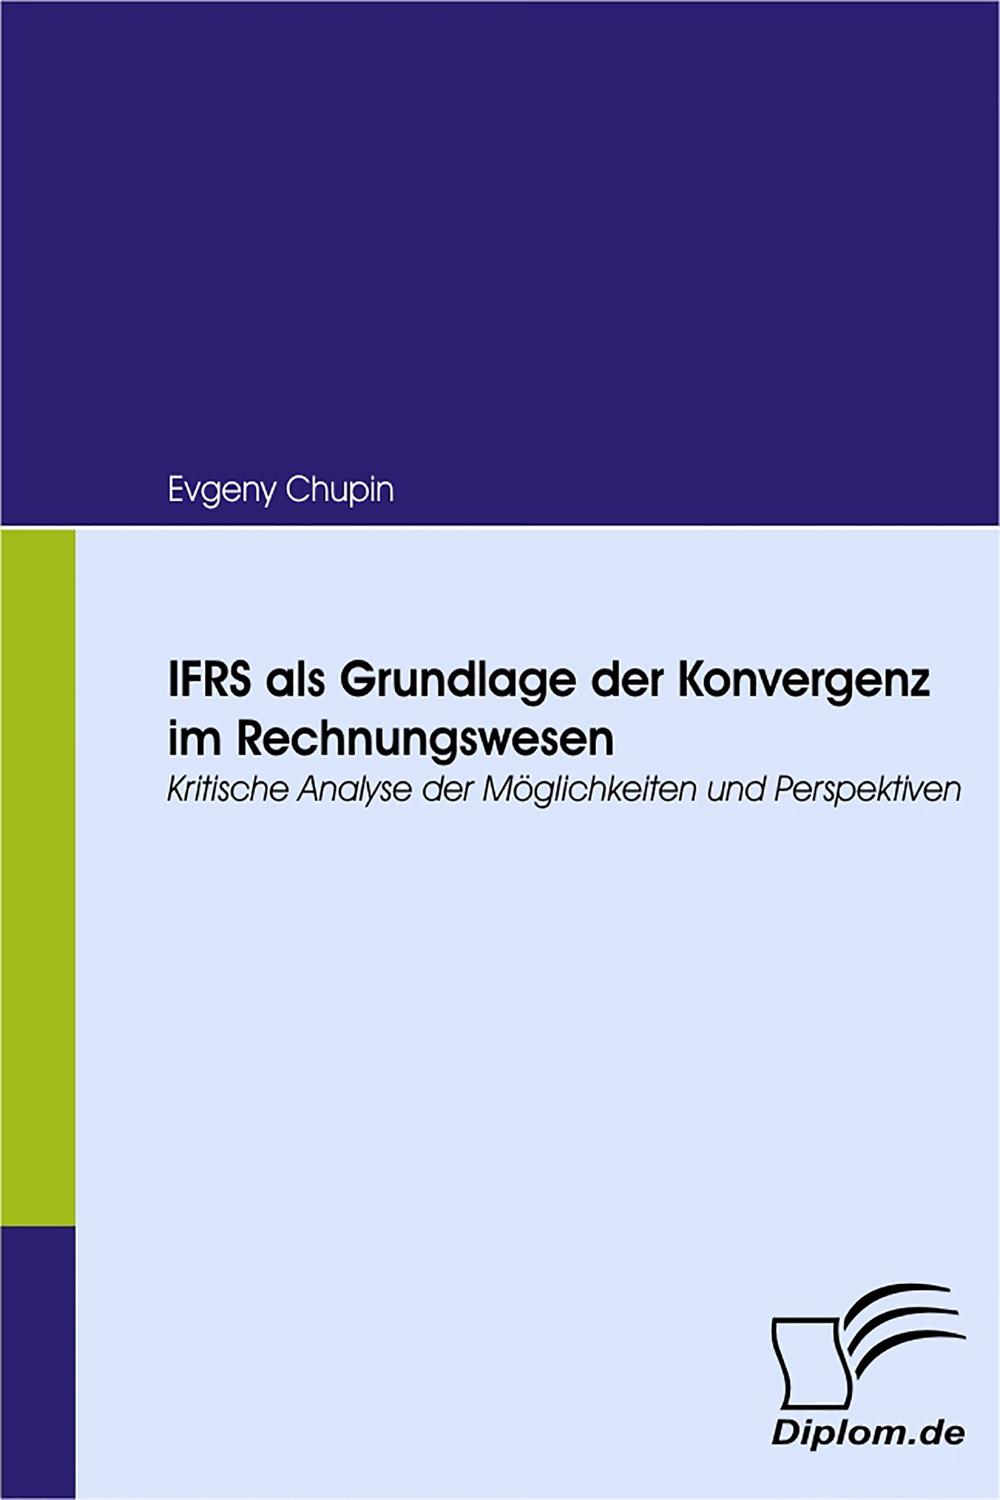 IFRS als Grundlage der Konvergenz im Rechnungswesen - Evgeny Chupin